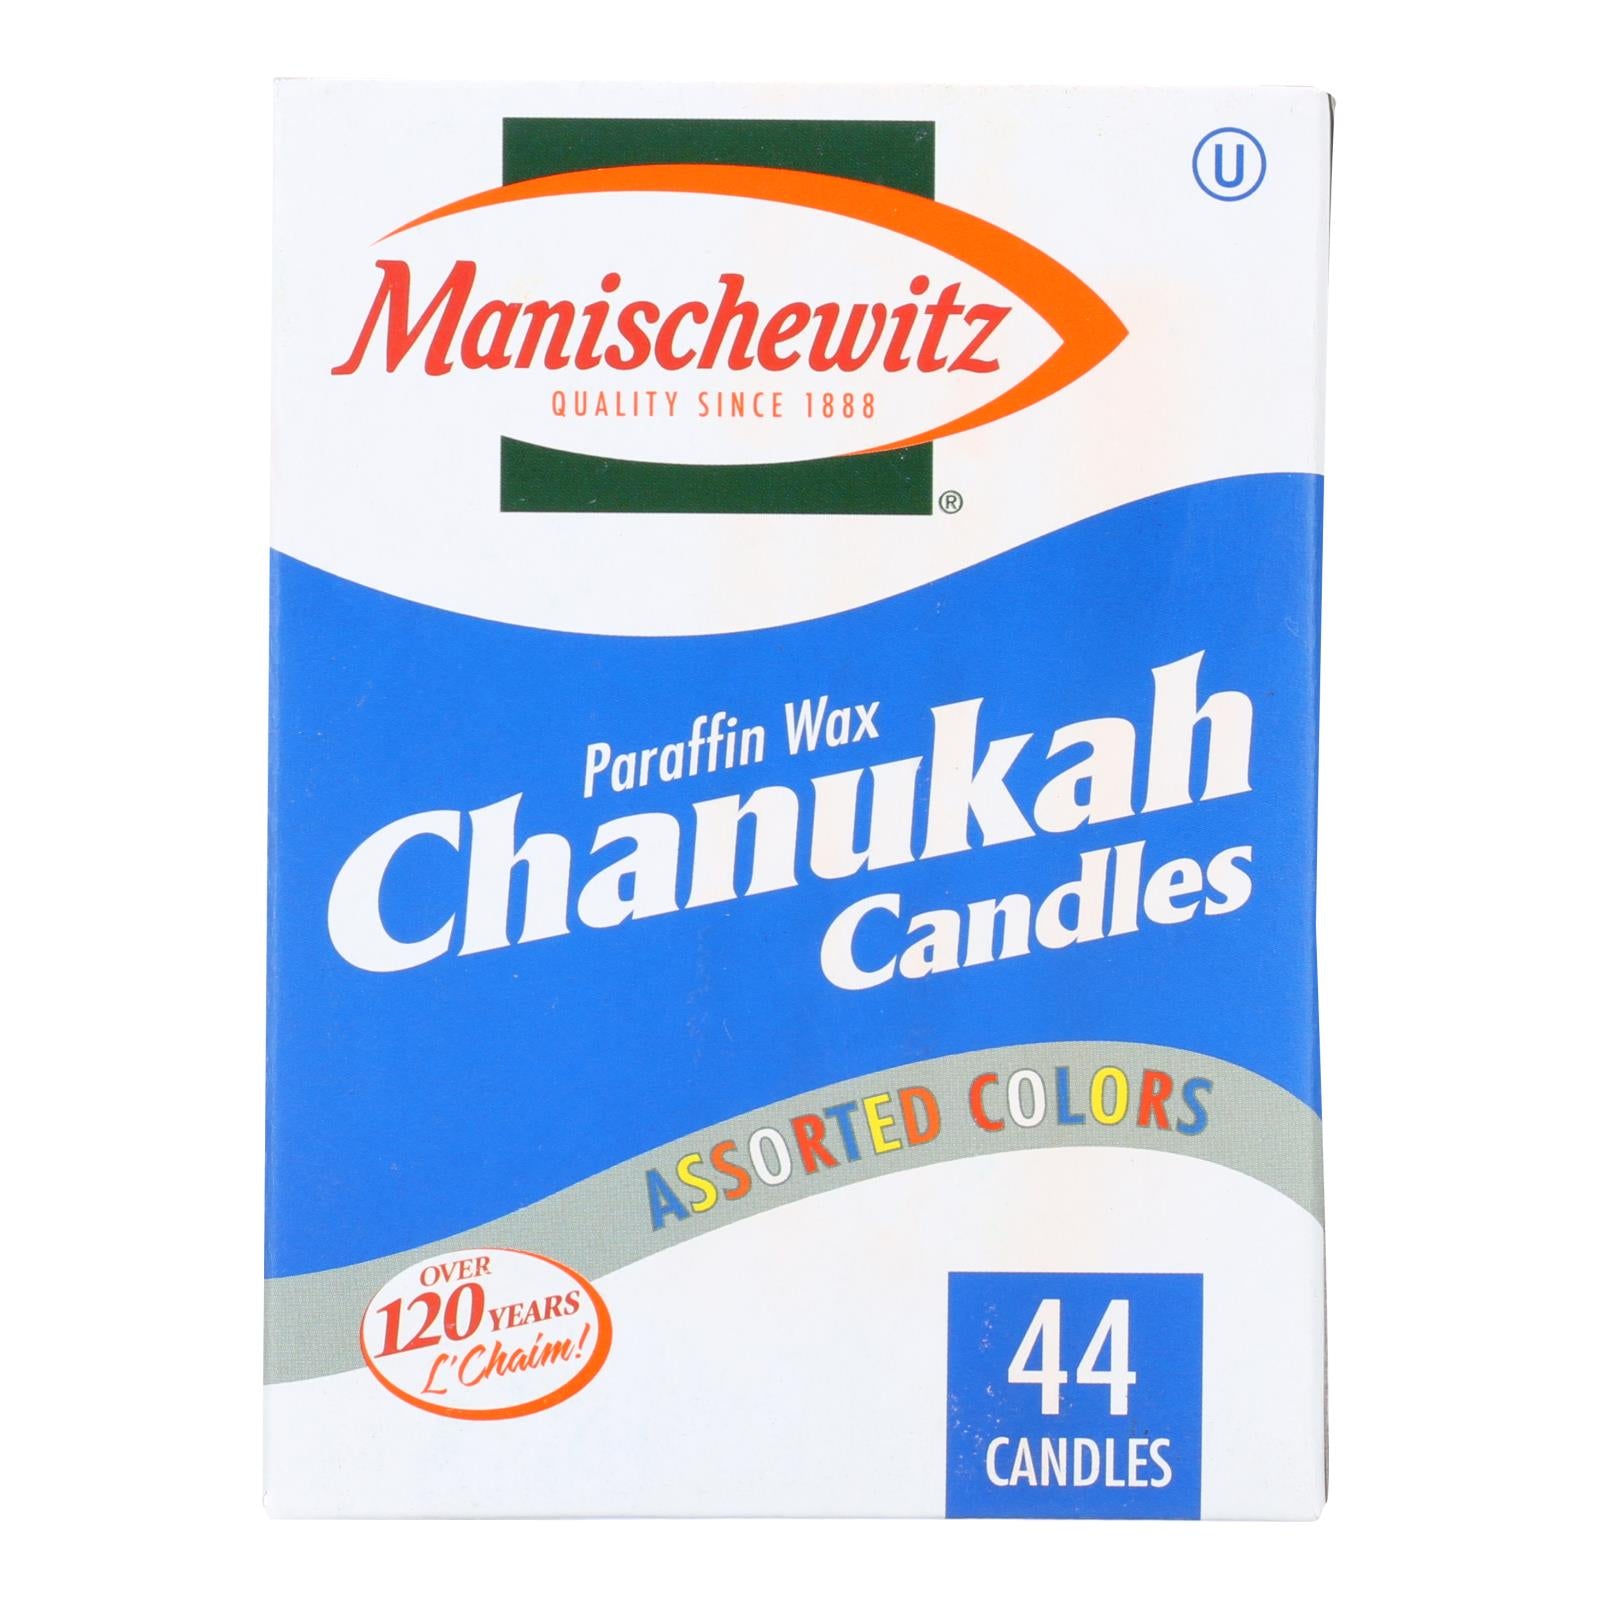 Manischewitz - Chanukah Candles - Case of 10 - 44 Count